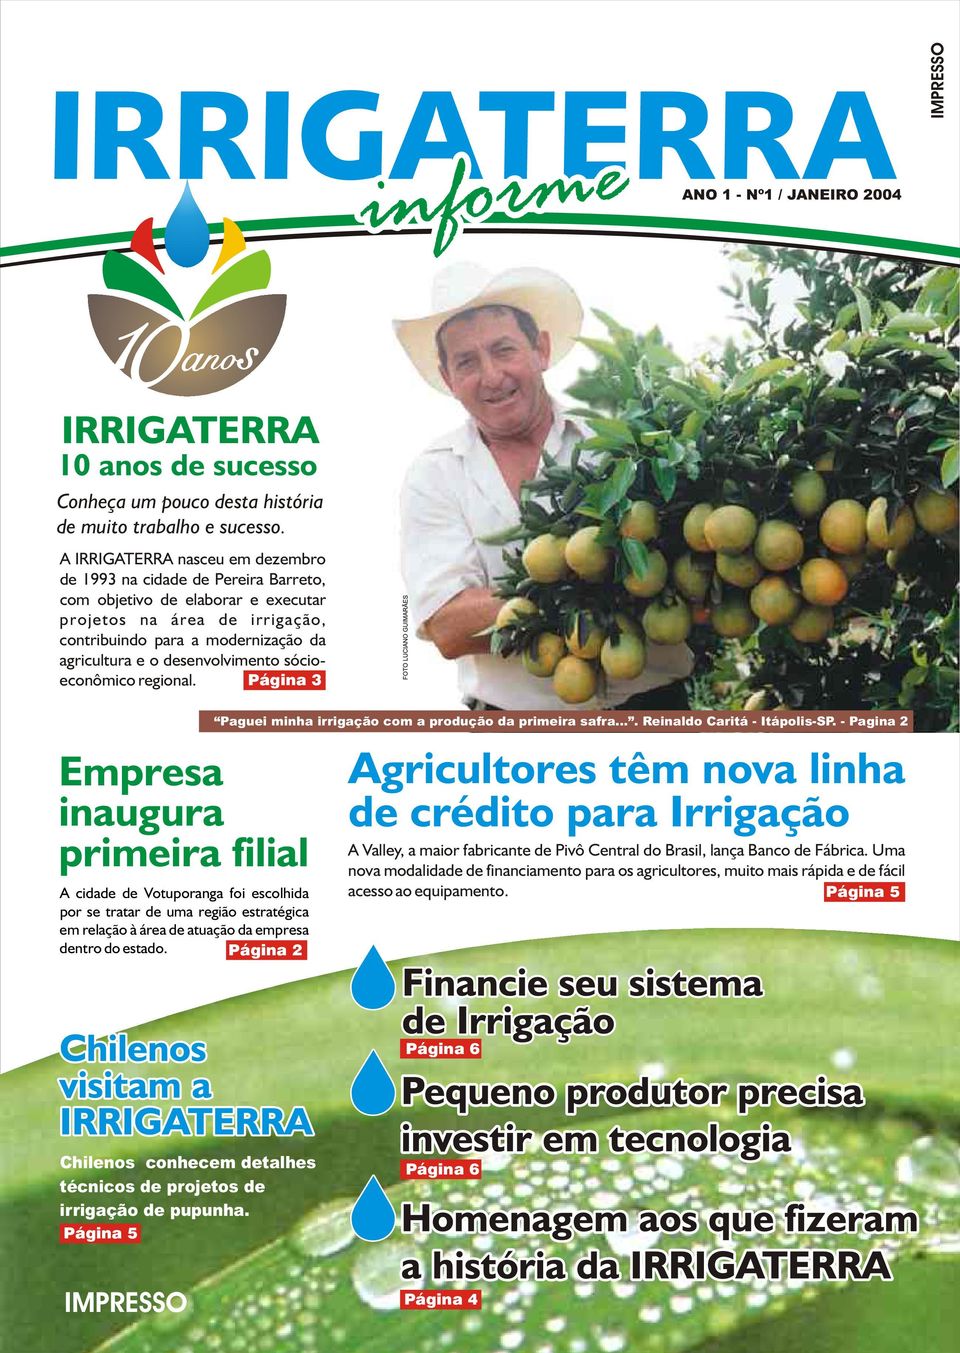 desenvolvimento sóciopágina 3 econômico regional. Paguei minha irrigação com a produção da primeira safra.... Reinaldo Caritá - Itápolis-SP.